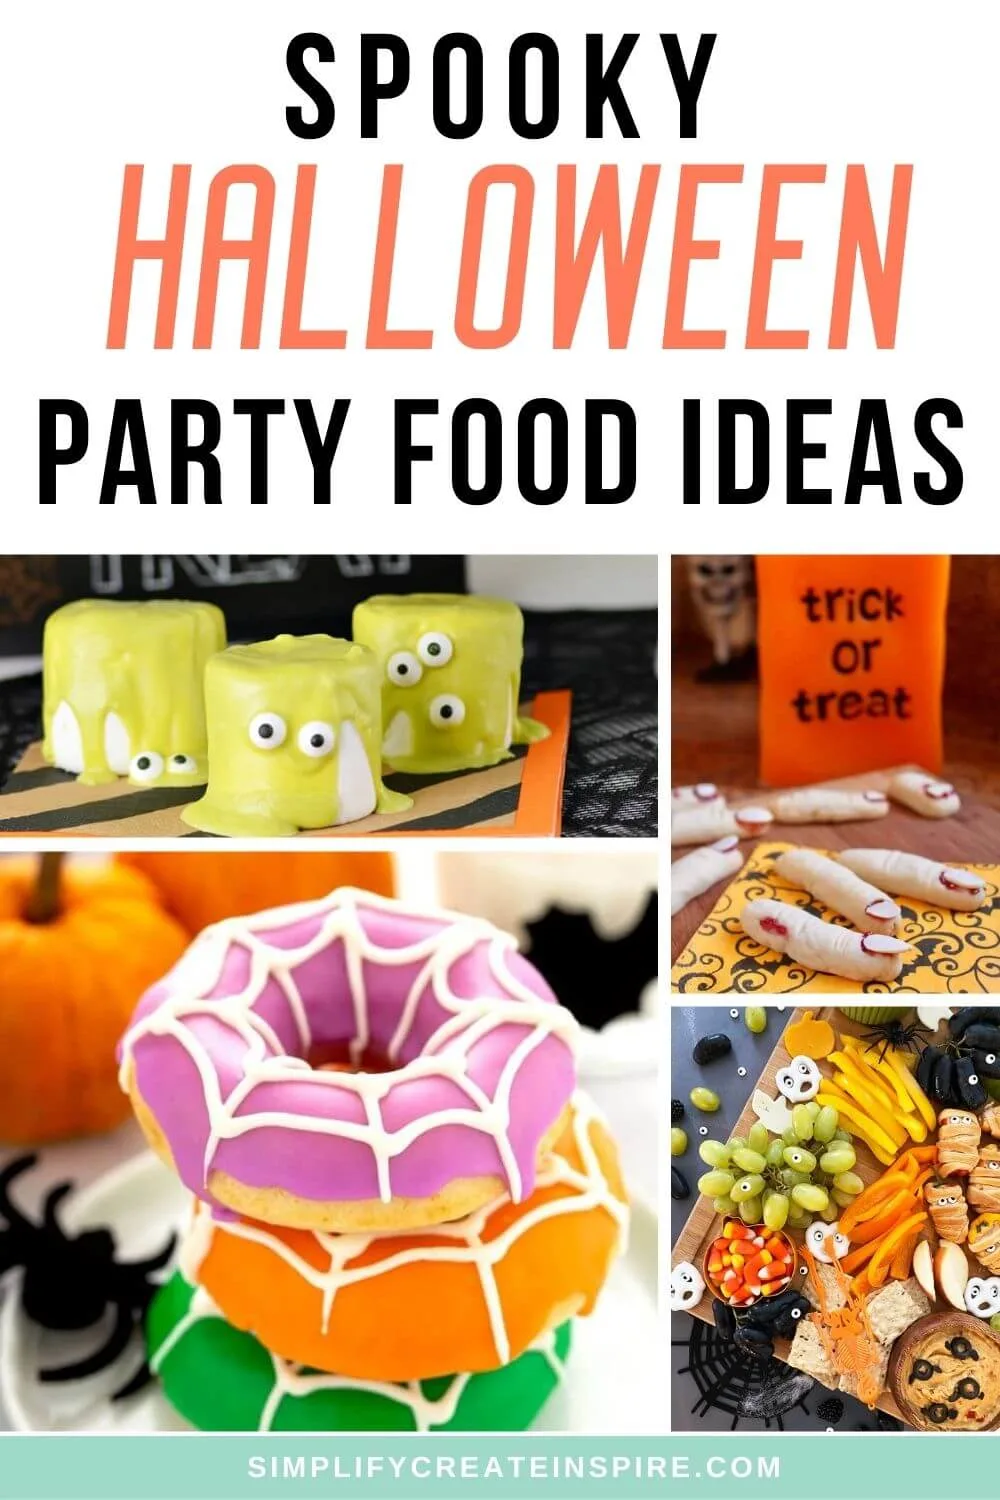 Halloween party finger foods